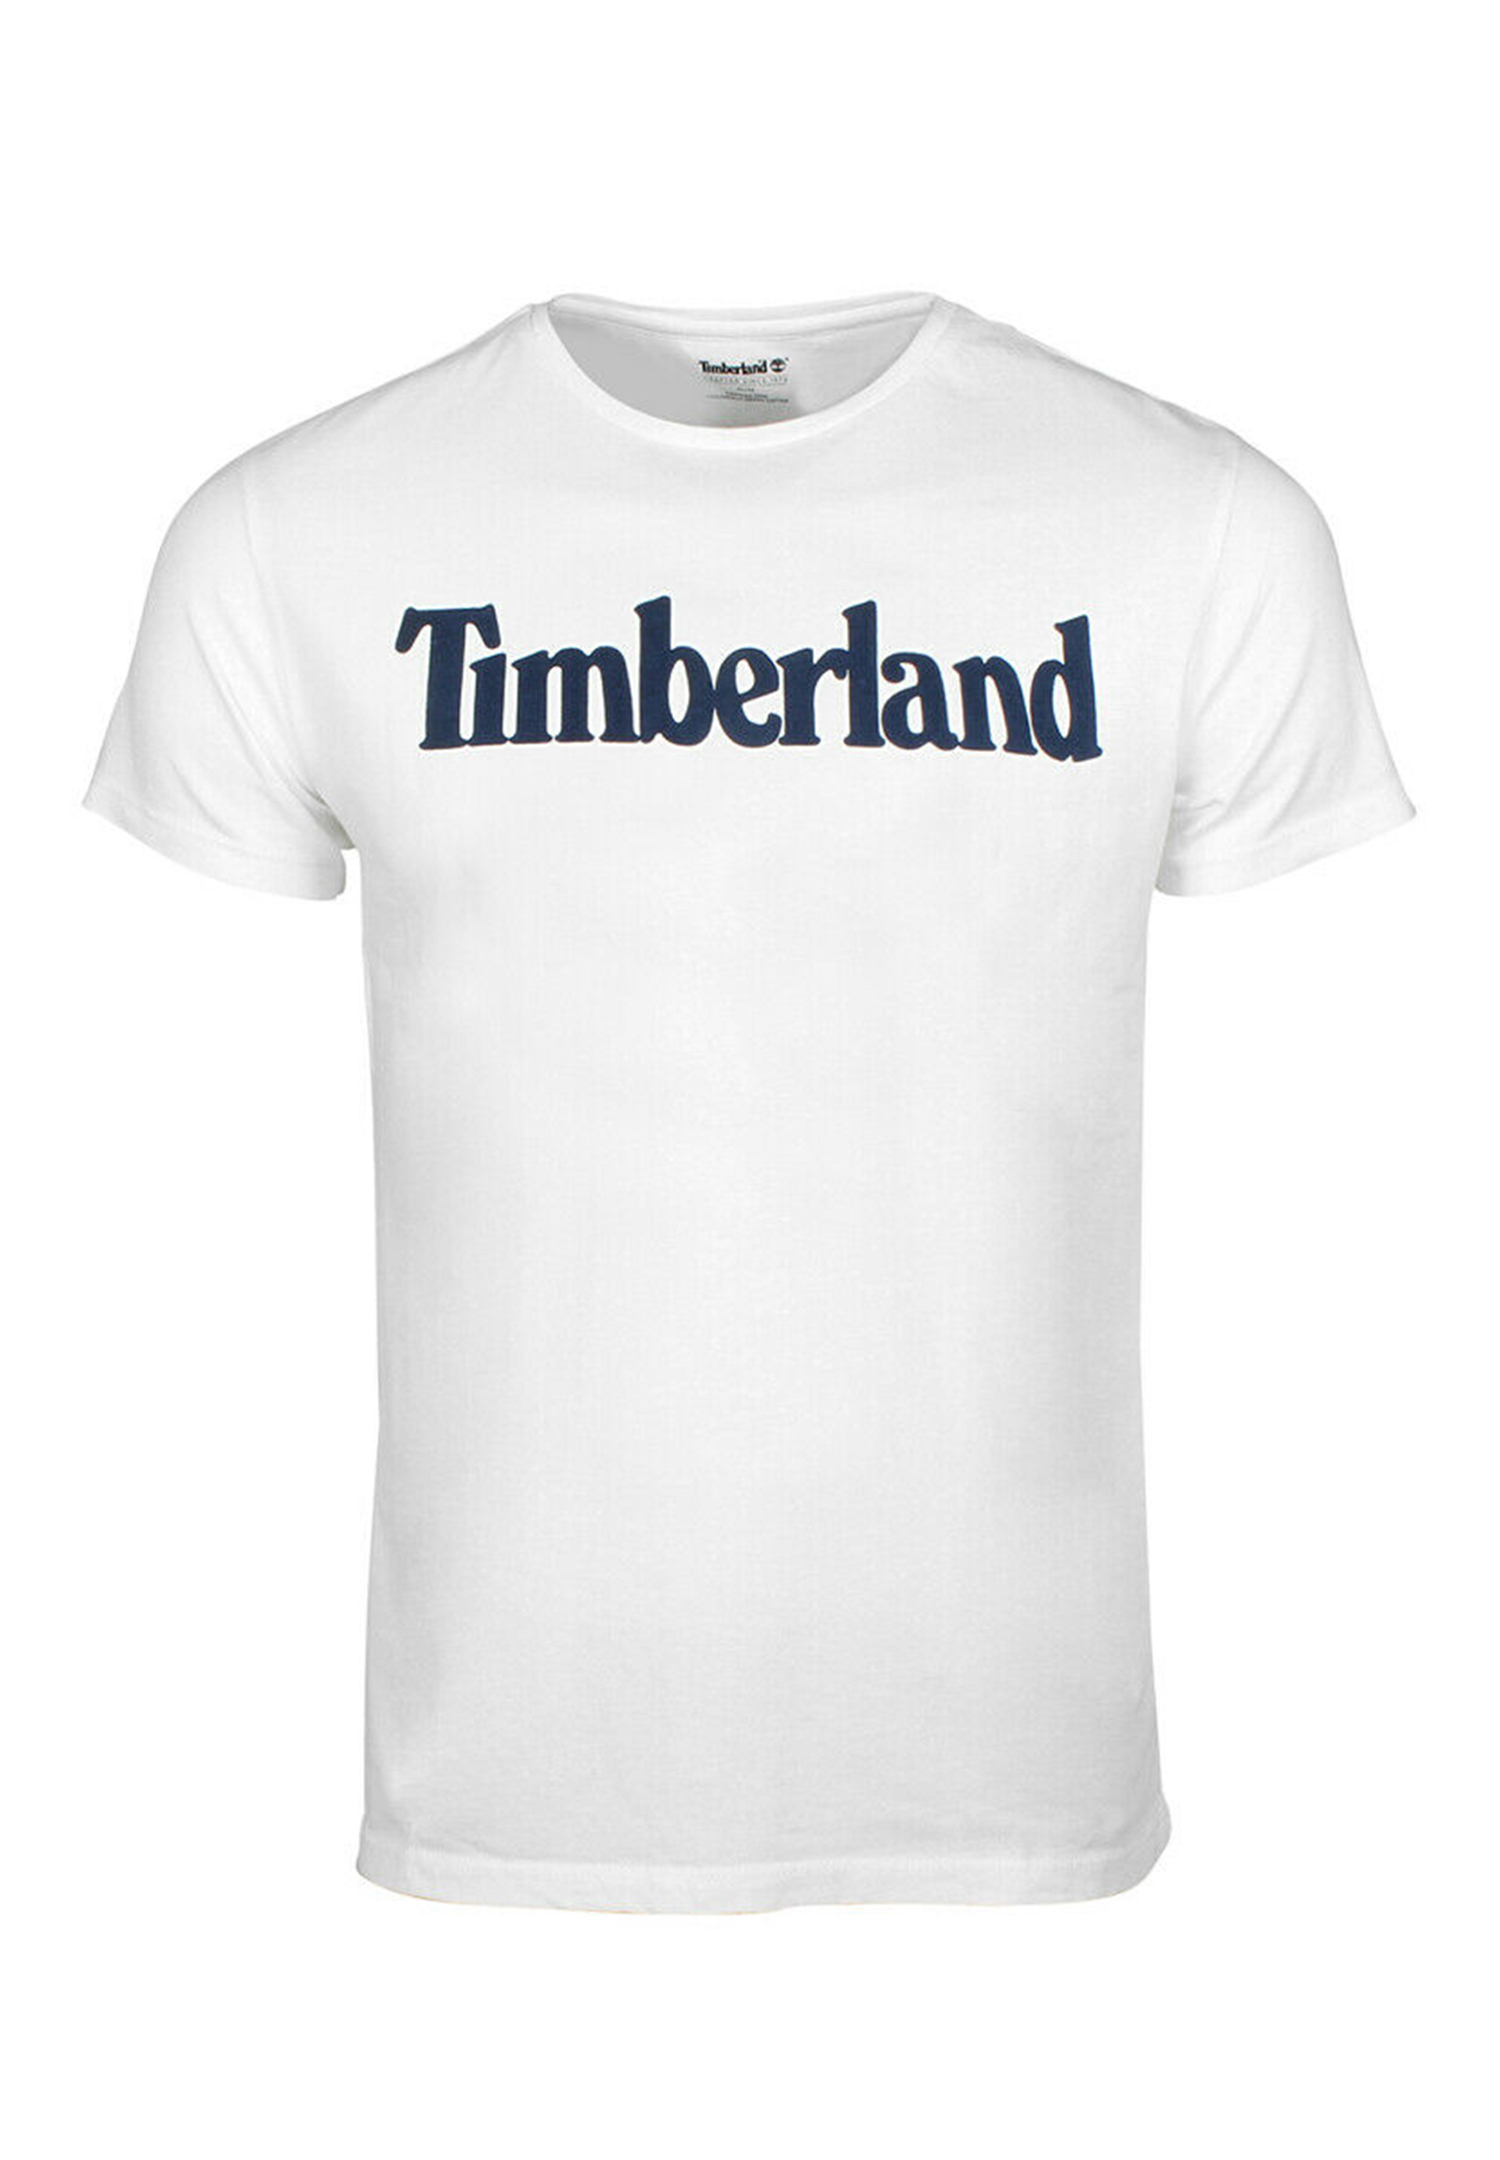 Timberland TFO SS Linear Tee Herren T-Shirt Shirt TB0A2BRN 100 weiss